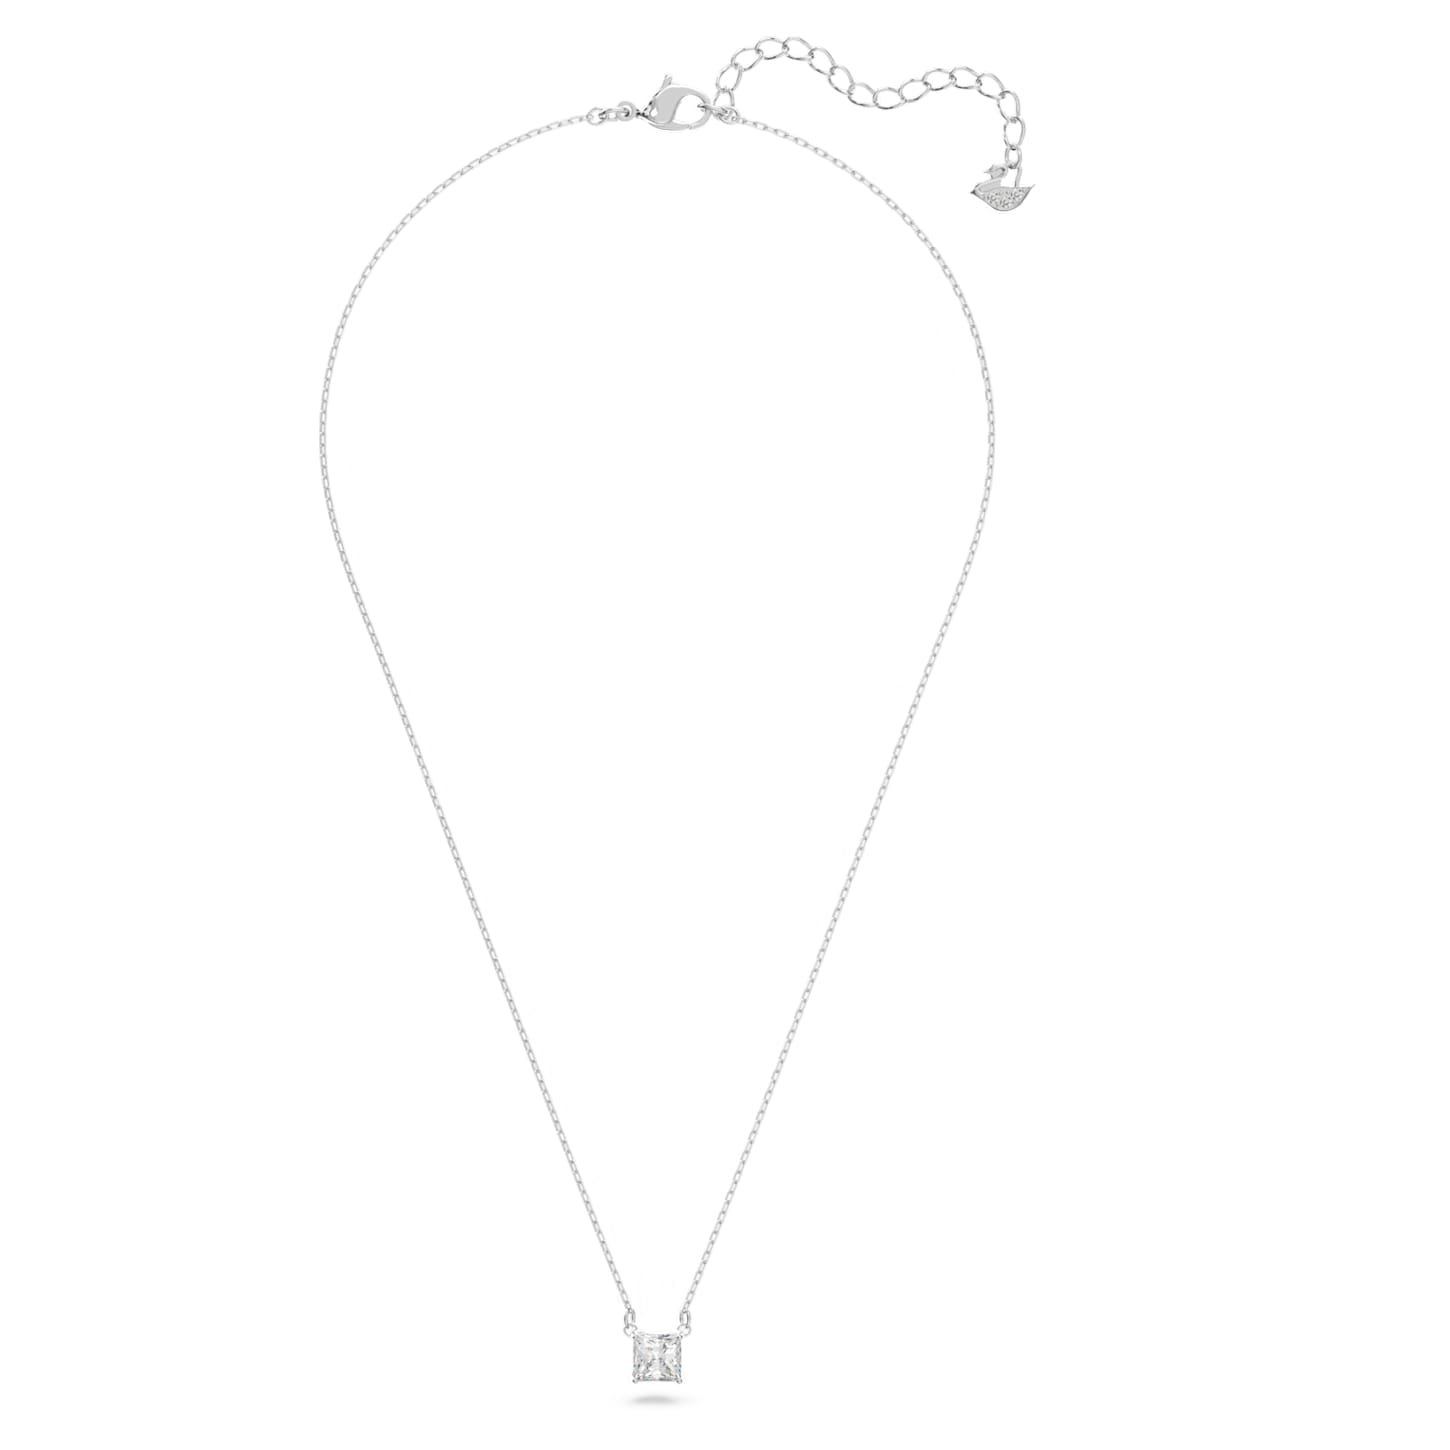 Attract - Weißes Silber - Quadratisch - Halskette - Swarovski